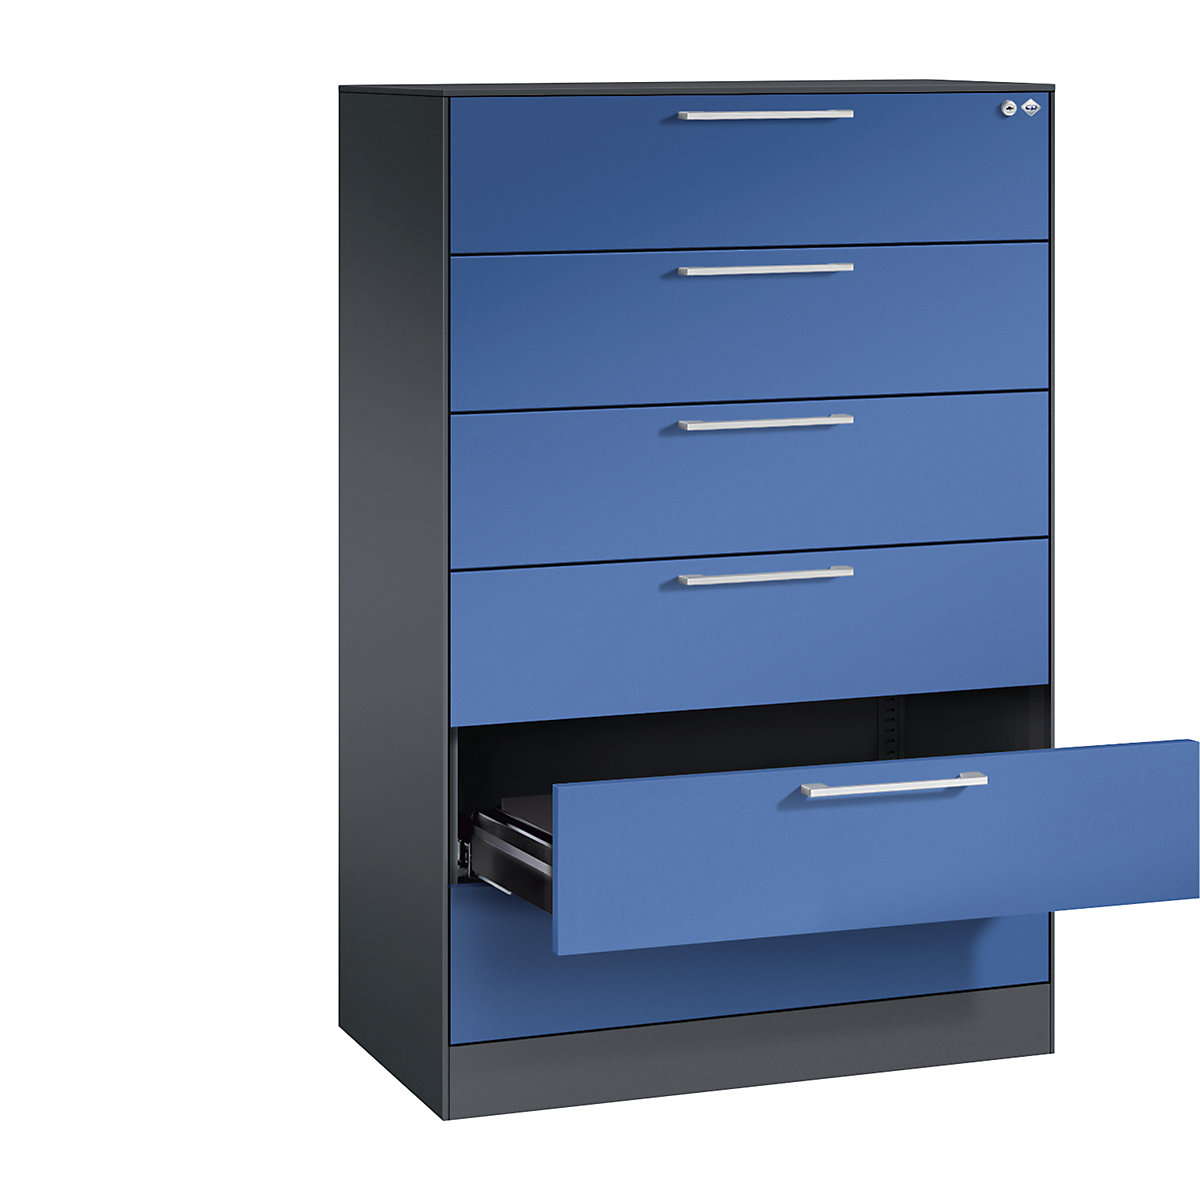 Fișier ASISTO – C+P, înălțime 1292 mm, cu 6 sertare, DIN A5 orizontal, gri negru/albastru gențiană-5